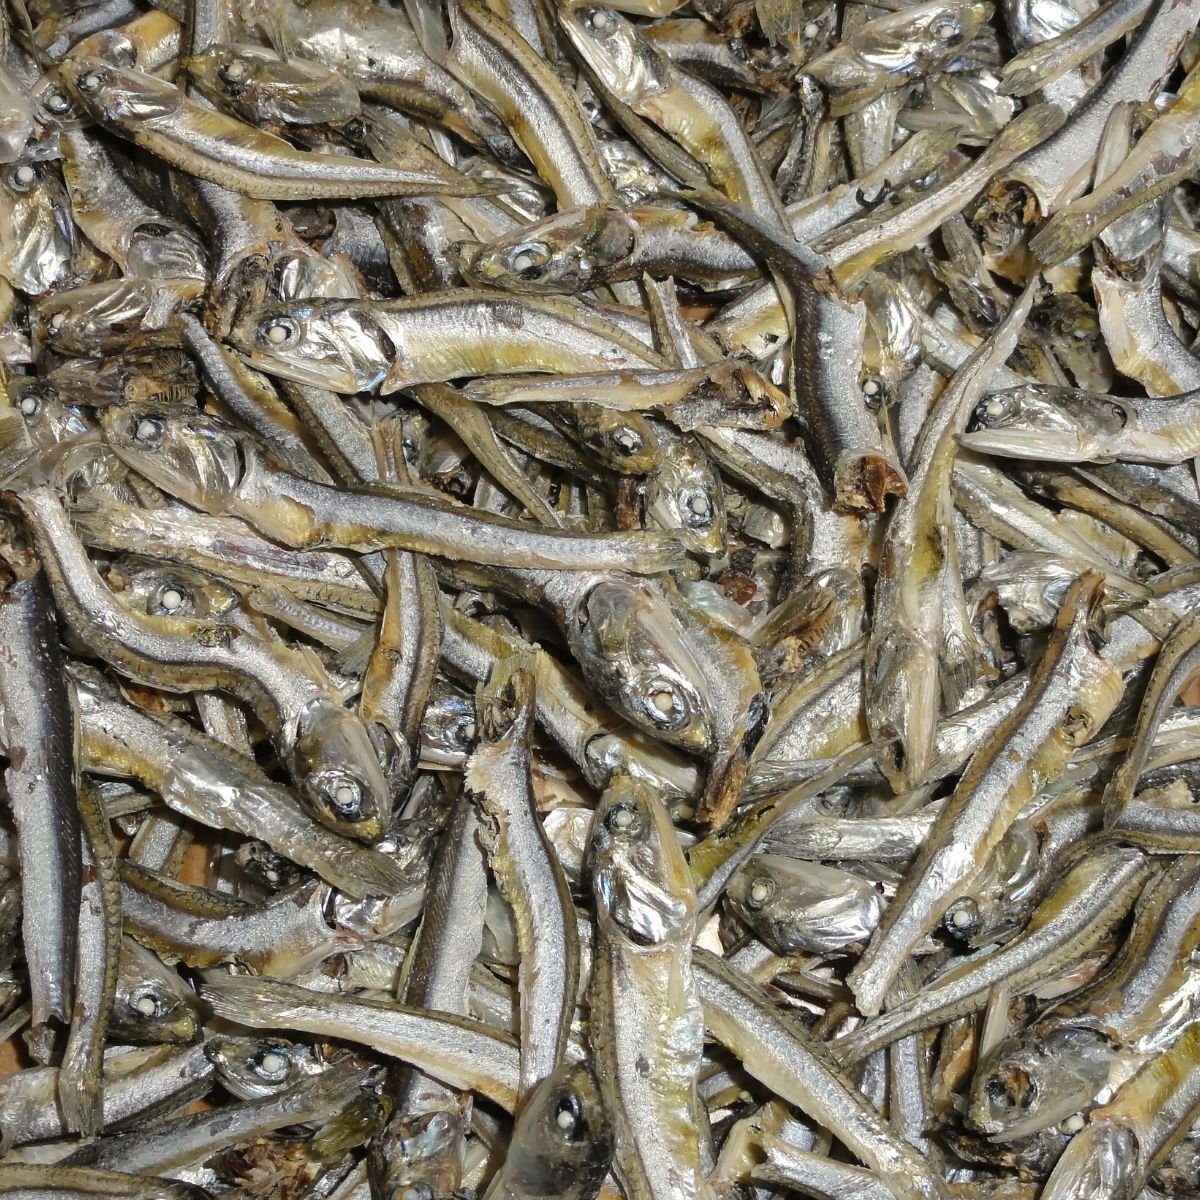 Many xouba fish.